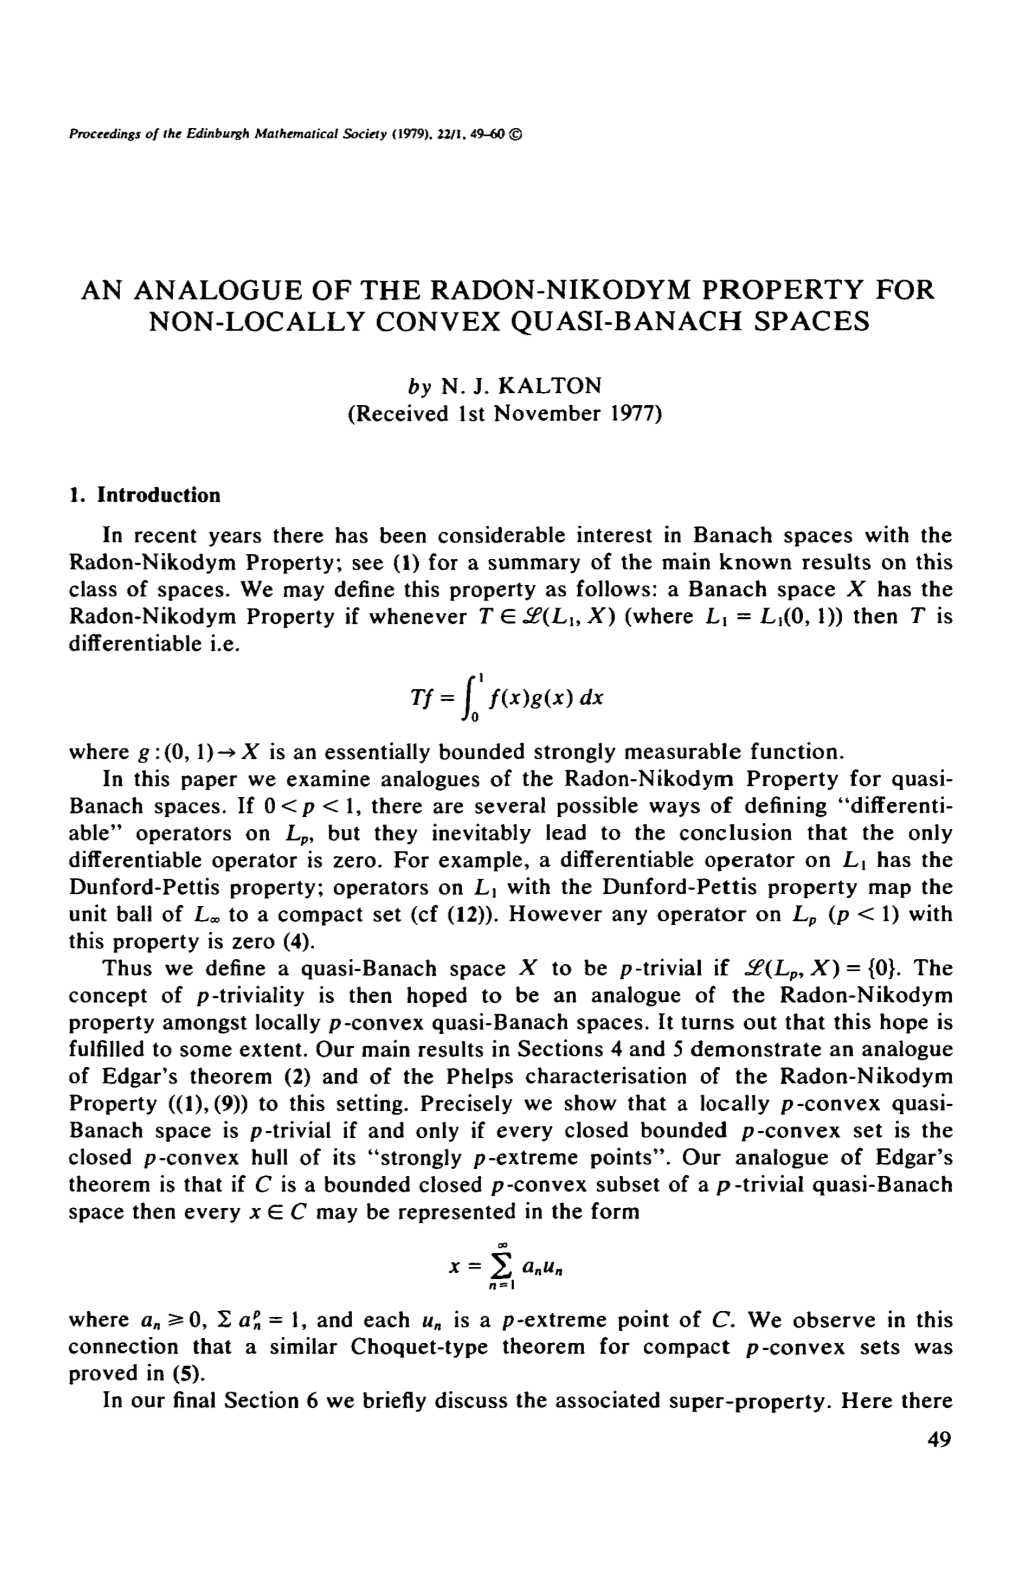 An Analogue of the Radon-Nikodym Property for Non-Locally Convex Quasi-Banach Spaces